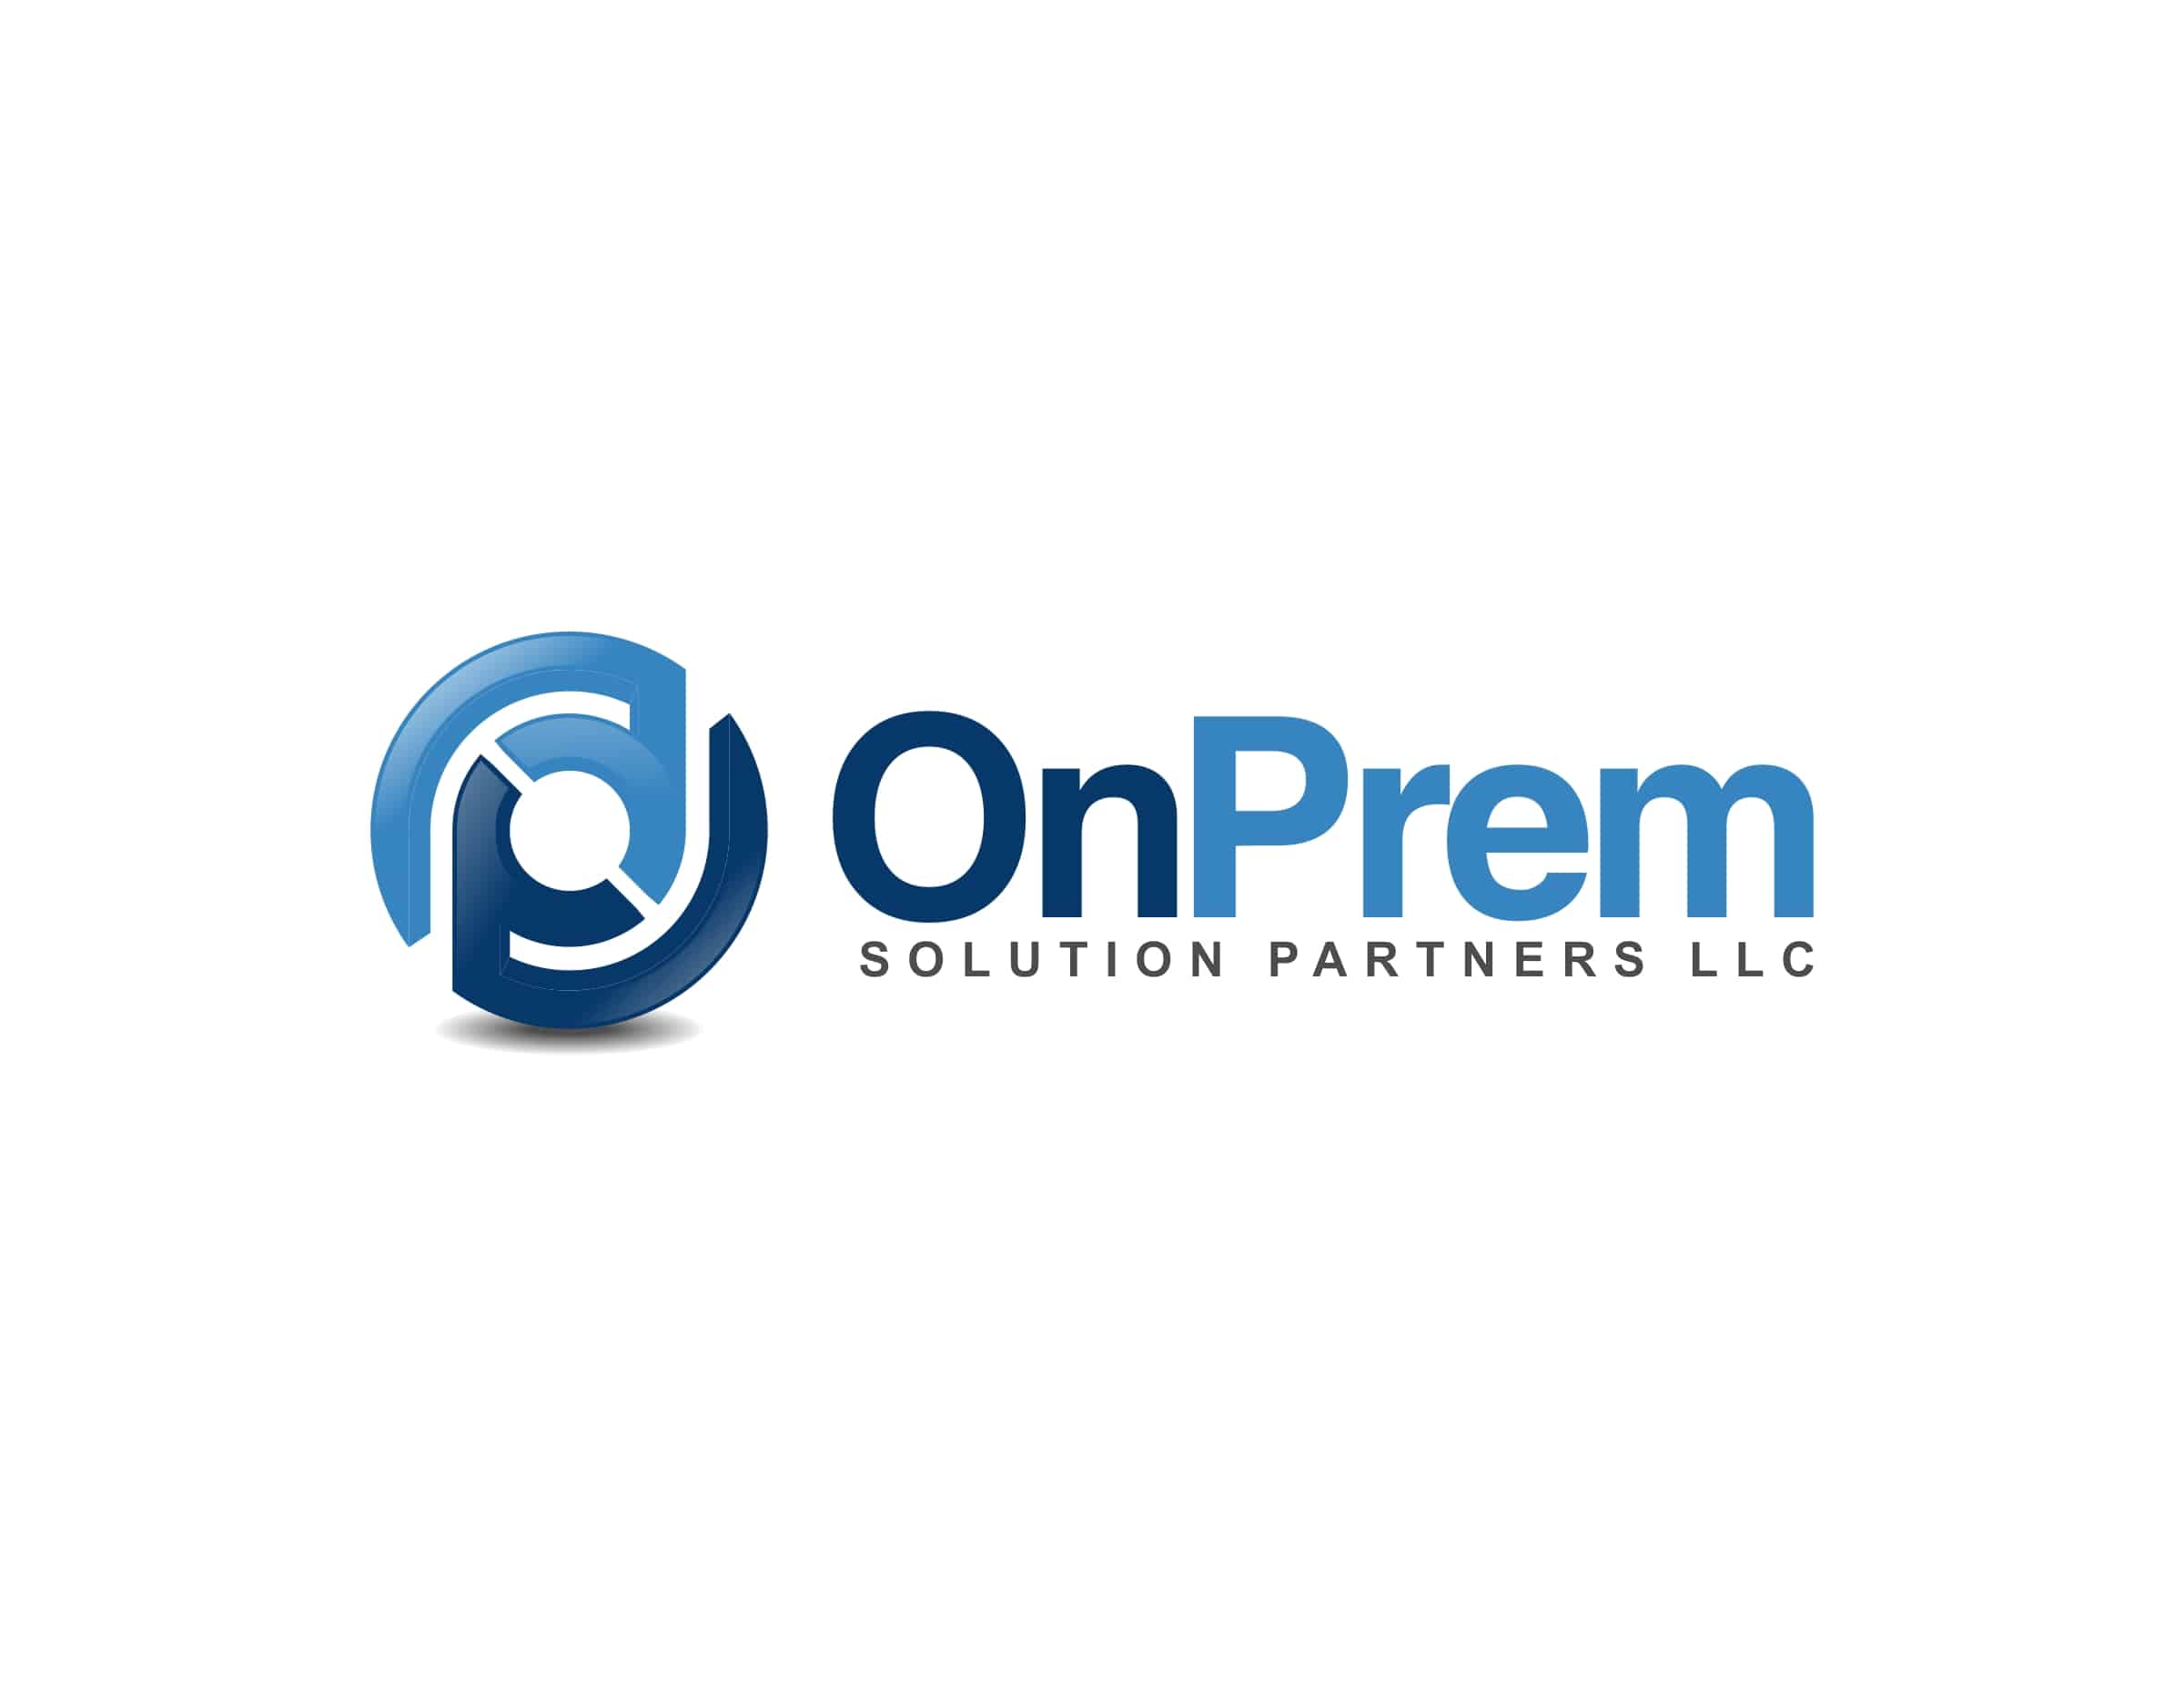 OnPrem Solution Partners logo